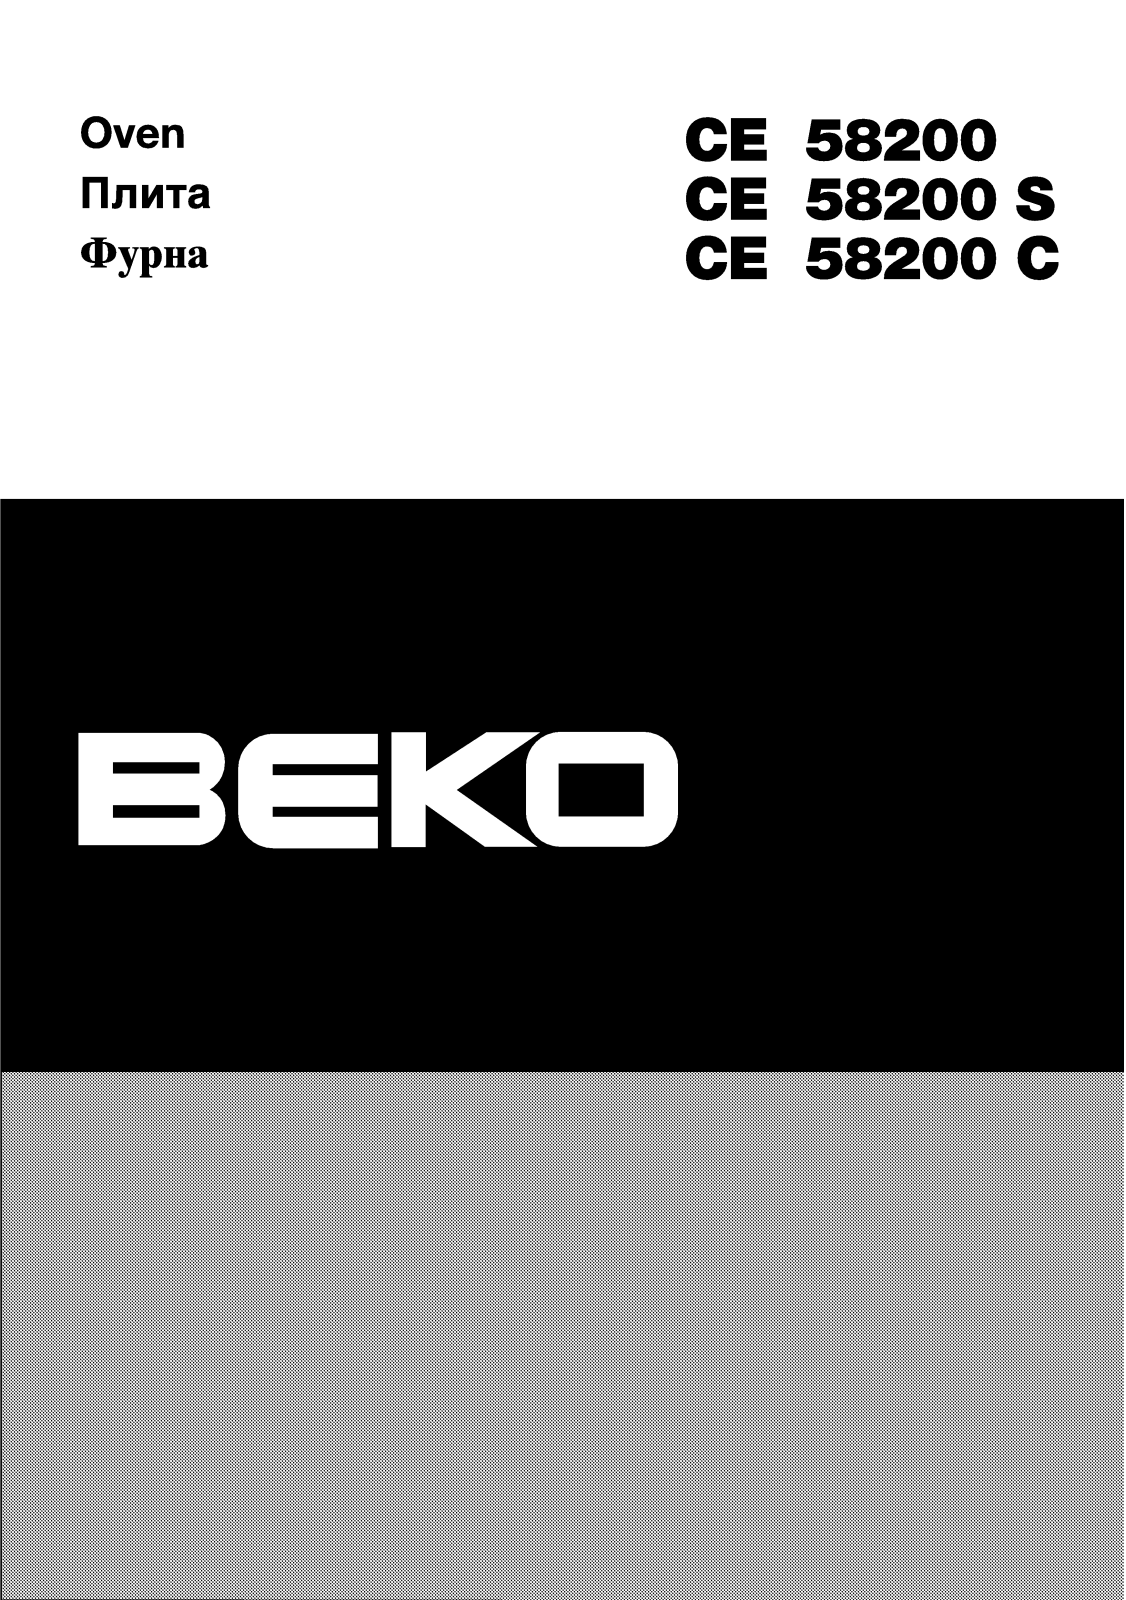 Beko CE 58200 S, CE 58200 C, CE 58200 User Manual